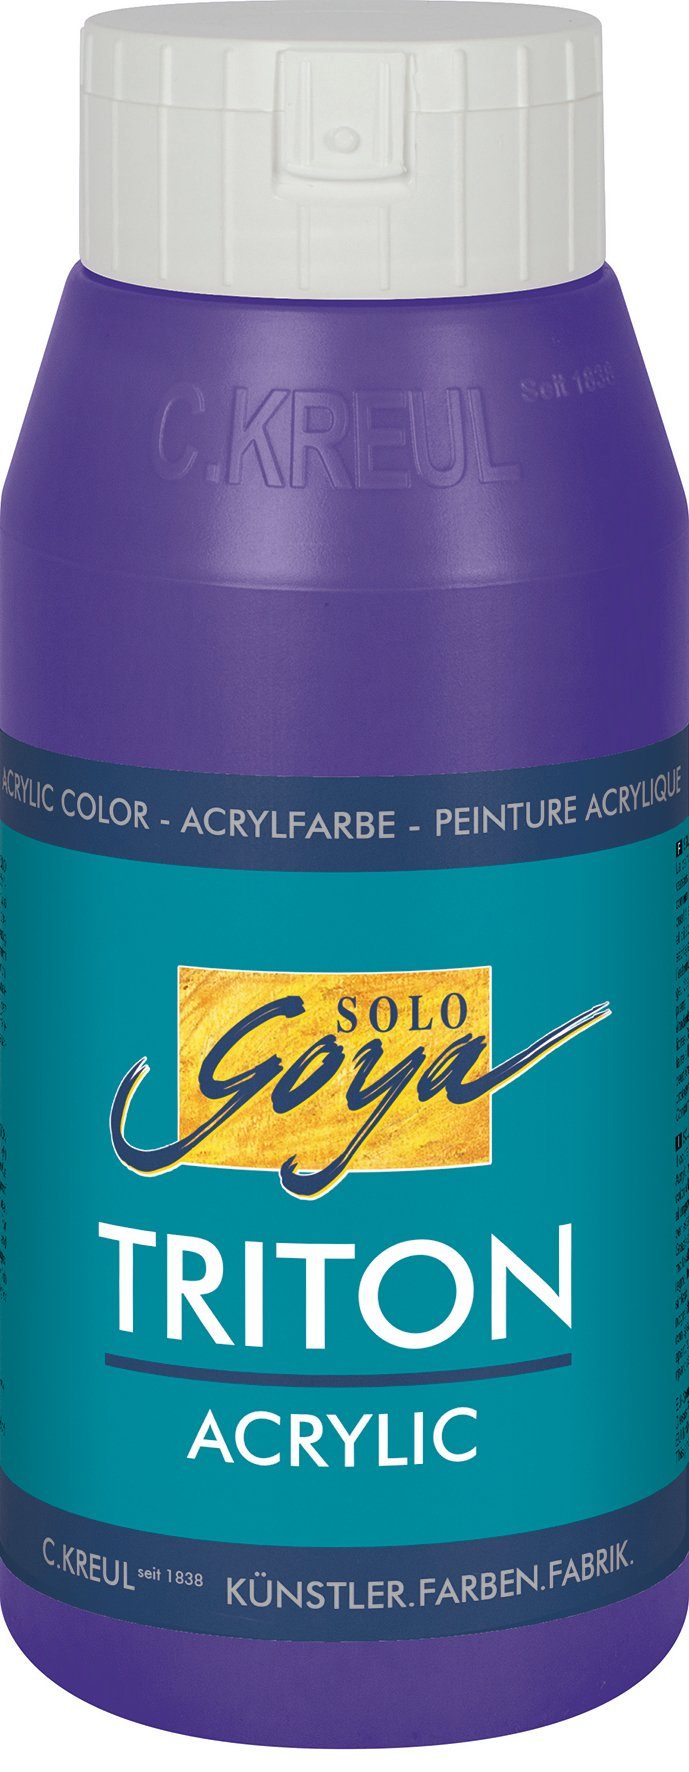 Kreul Acrylfarbe Solo Goya Triton ml Violett 750 Acrylic